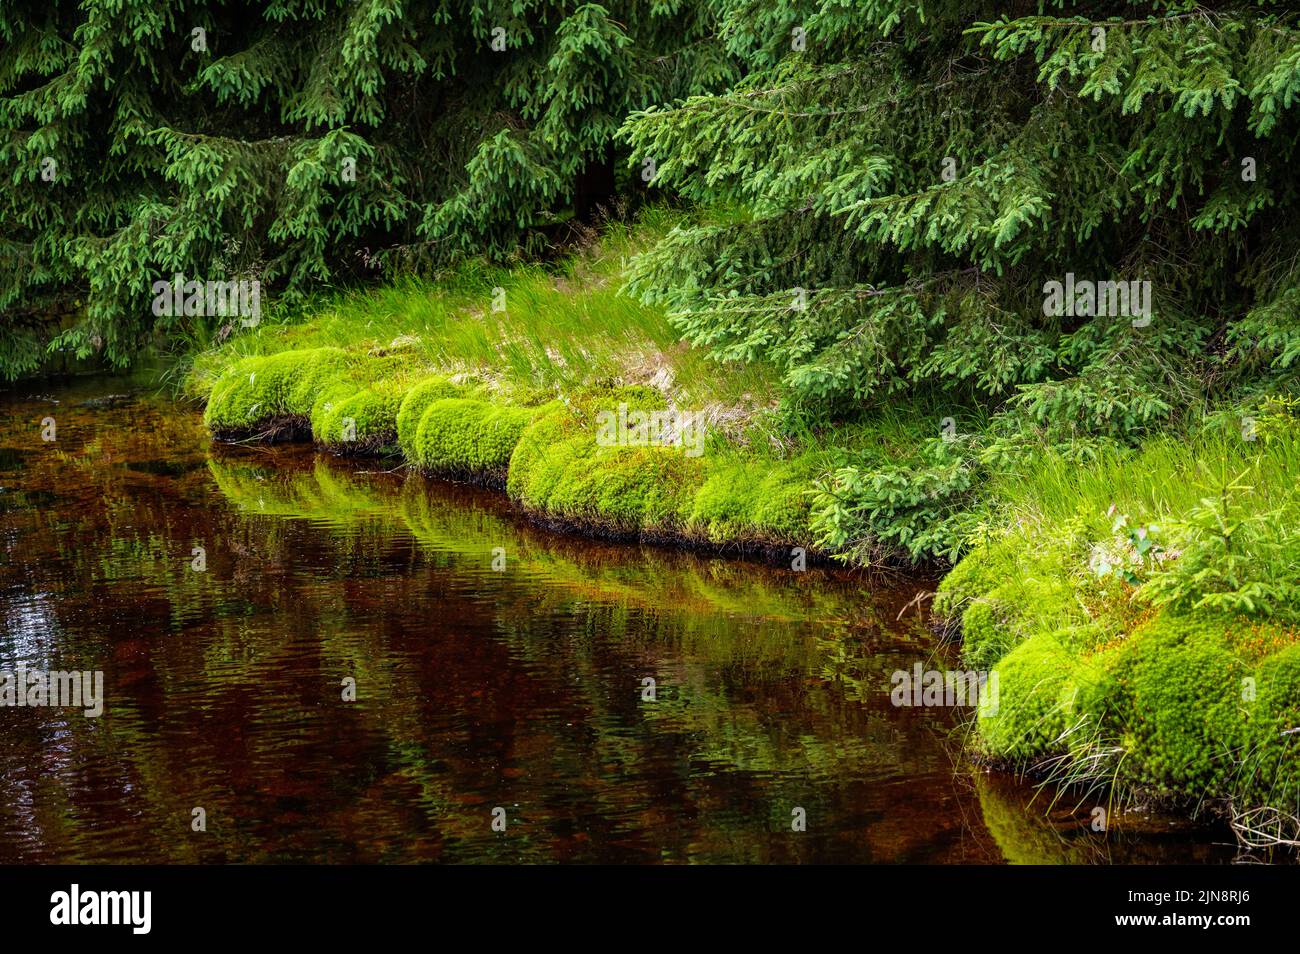 Muschio verde fresco sulla riva del ruscello di montagna, giovane abete rosso e torba dorata in fondo al torrente. repubblica Ceca, Cerna Smeada, Jizera montagne. Foto Stock